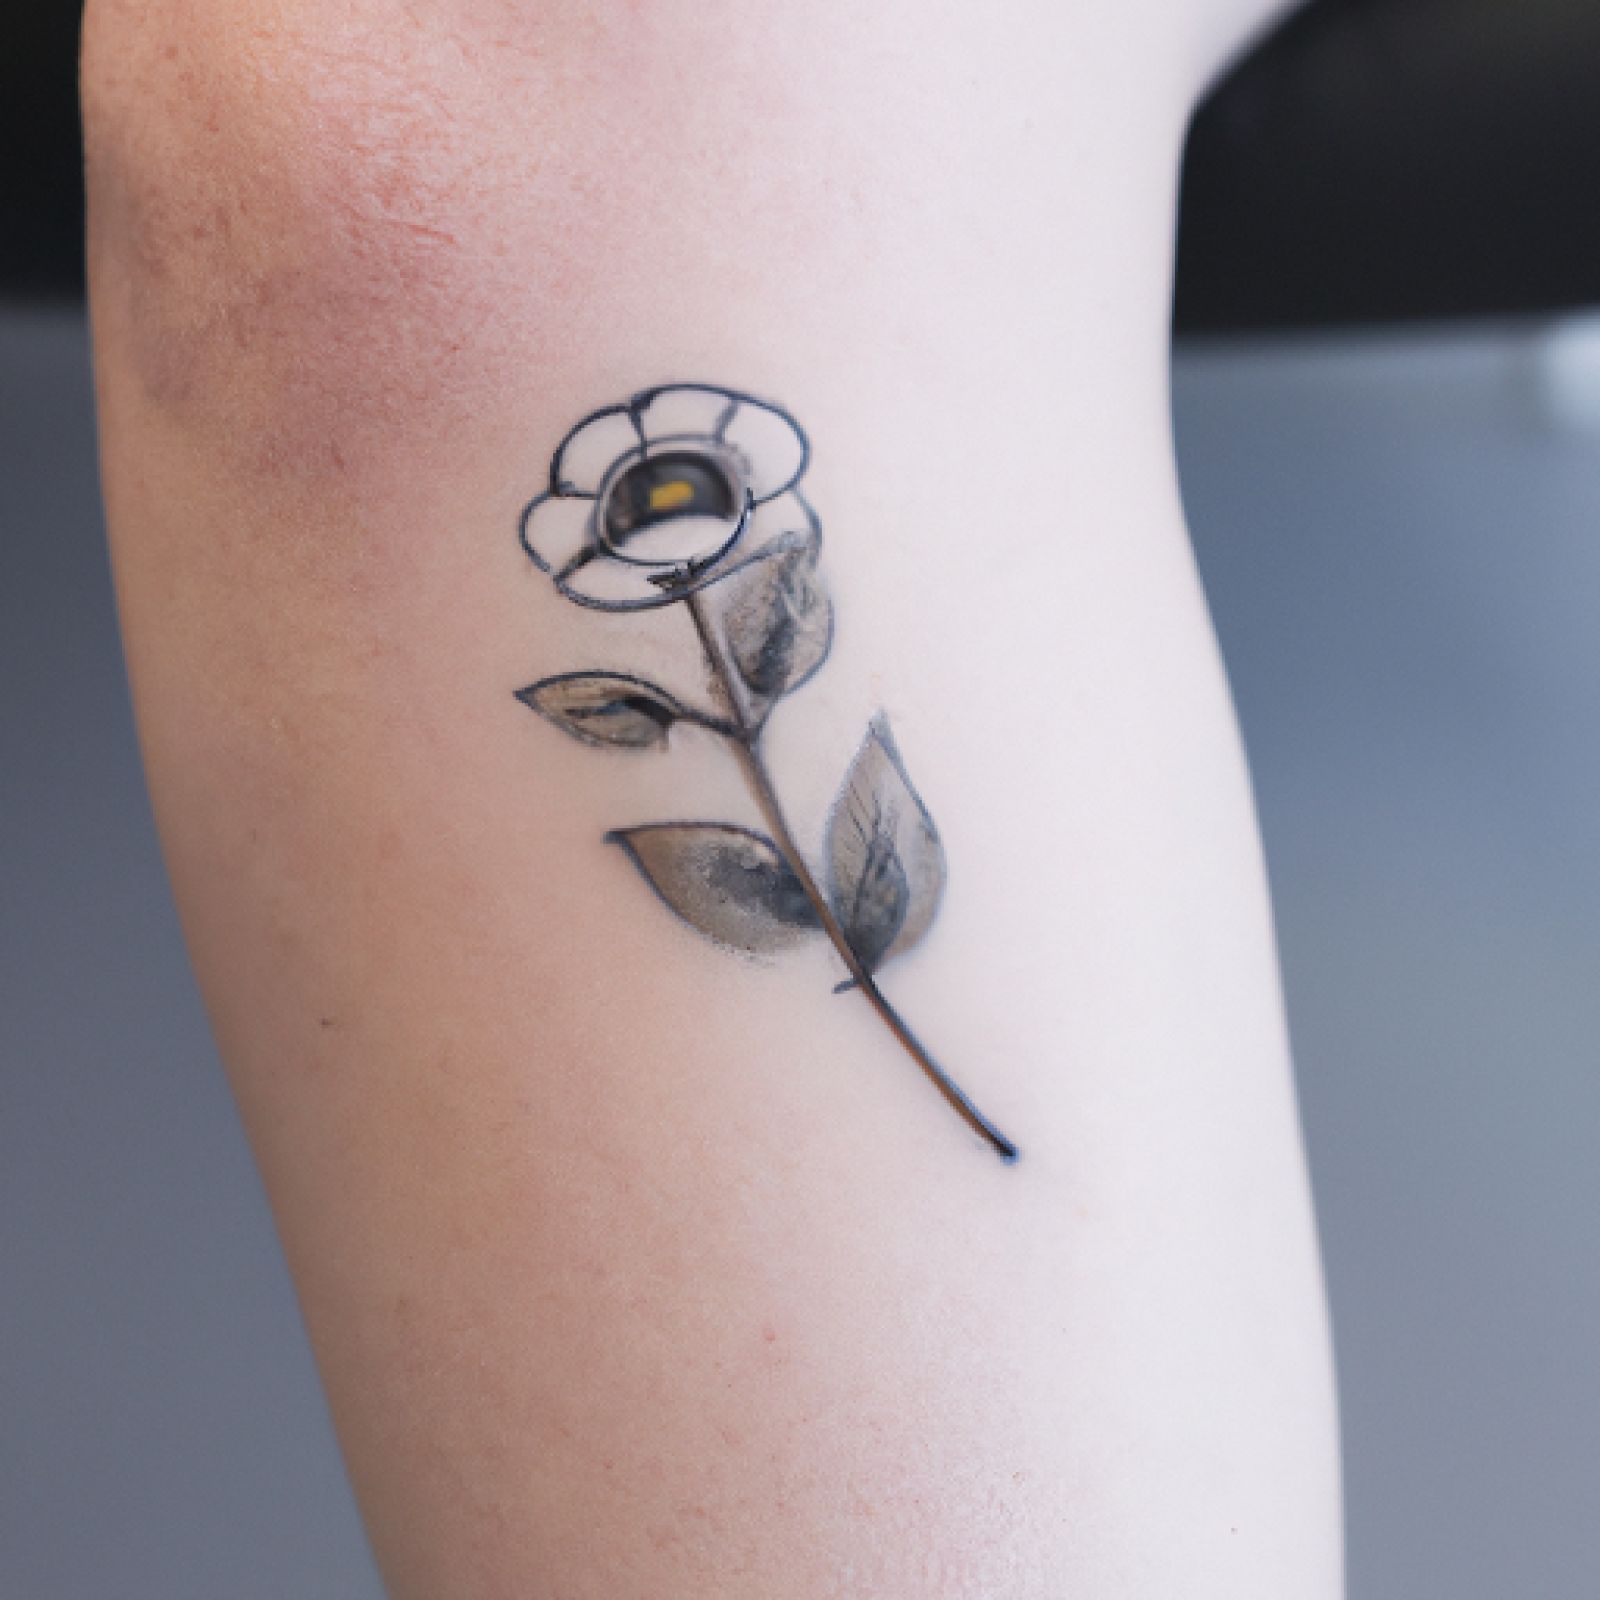 Flower tattoo on knee for women